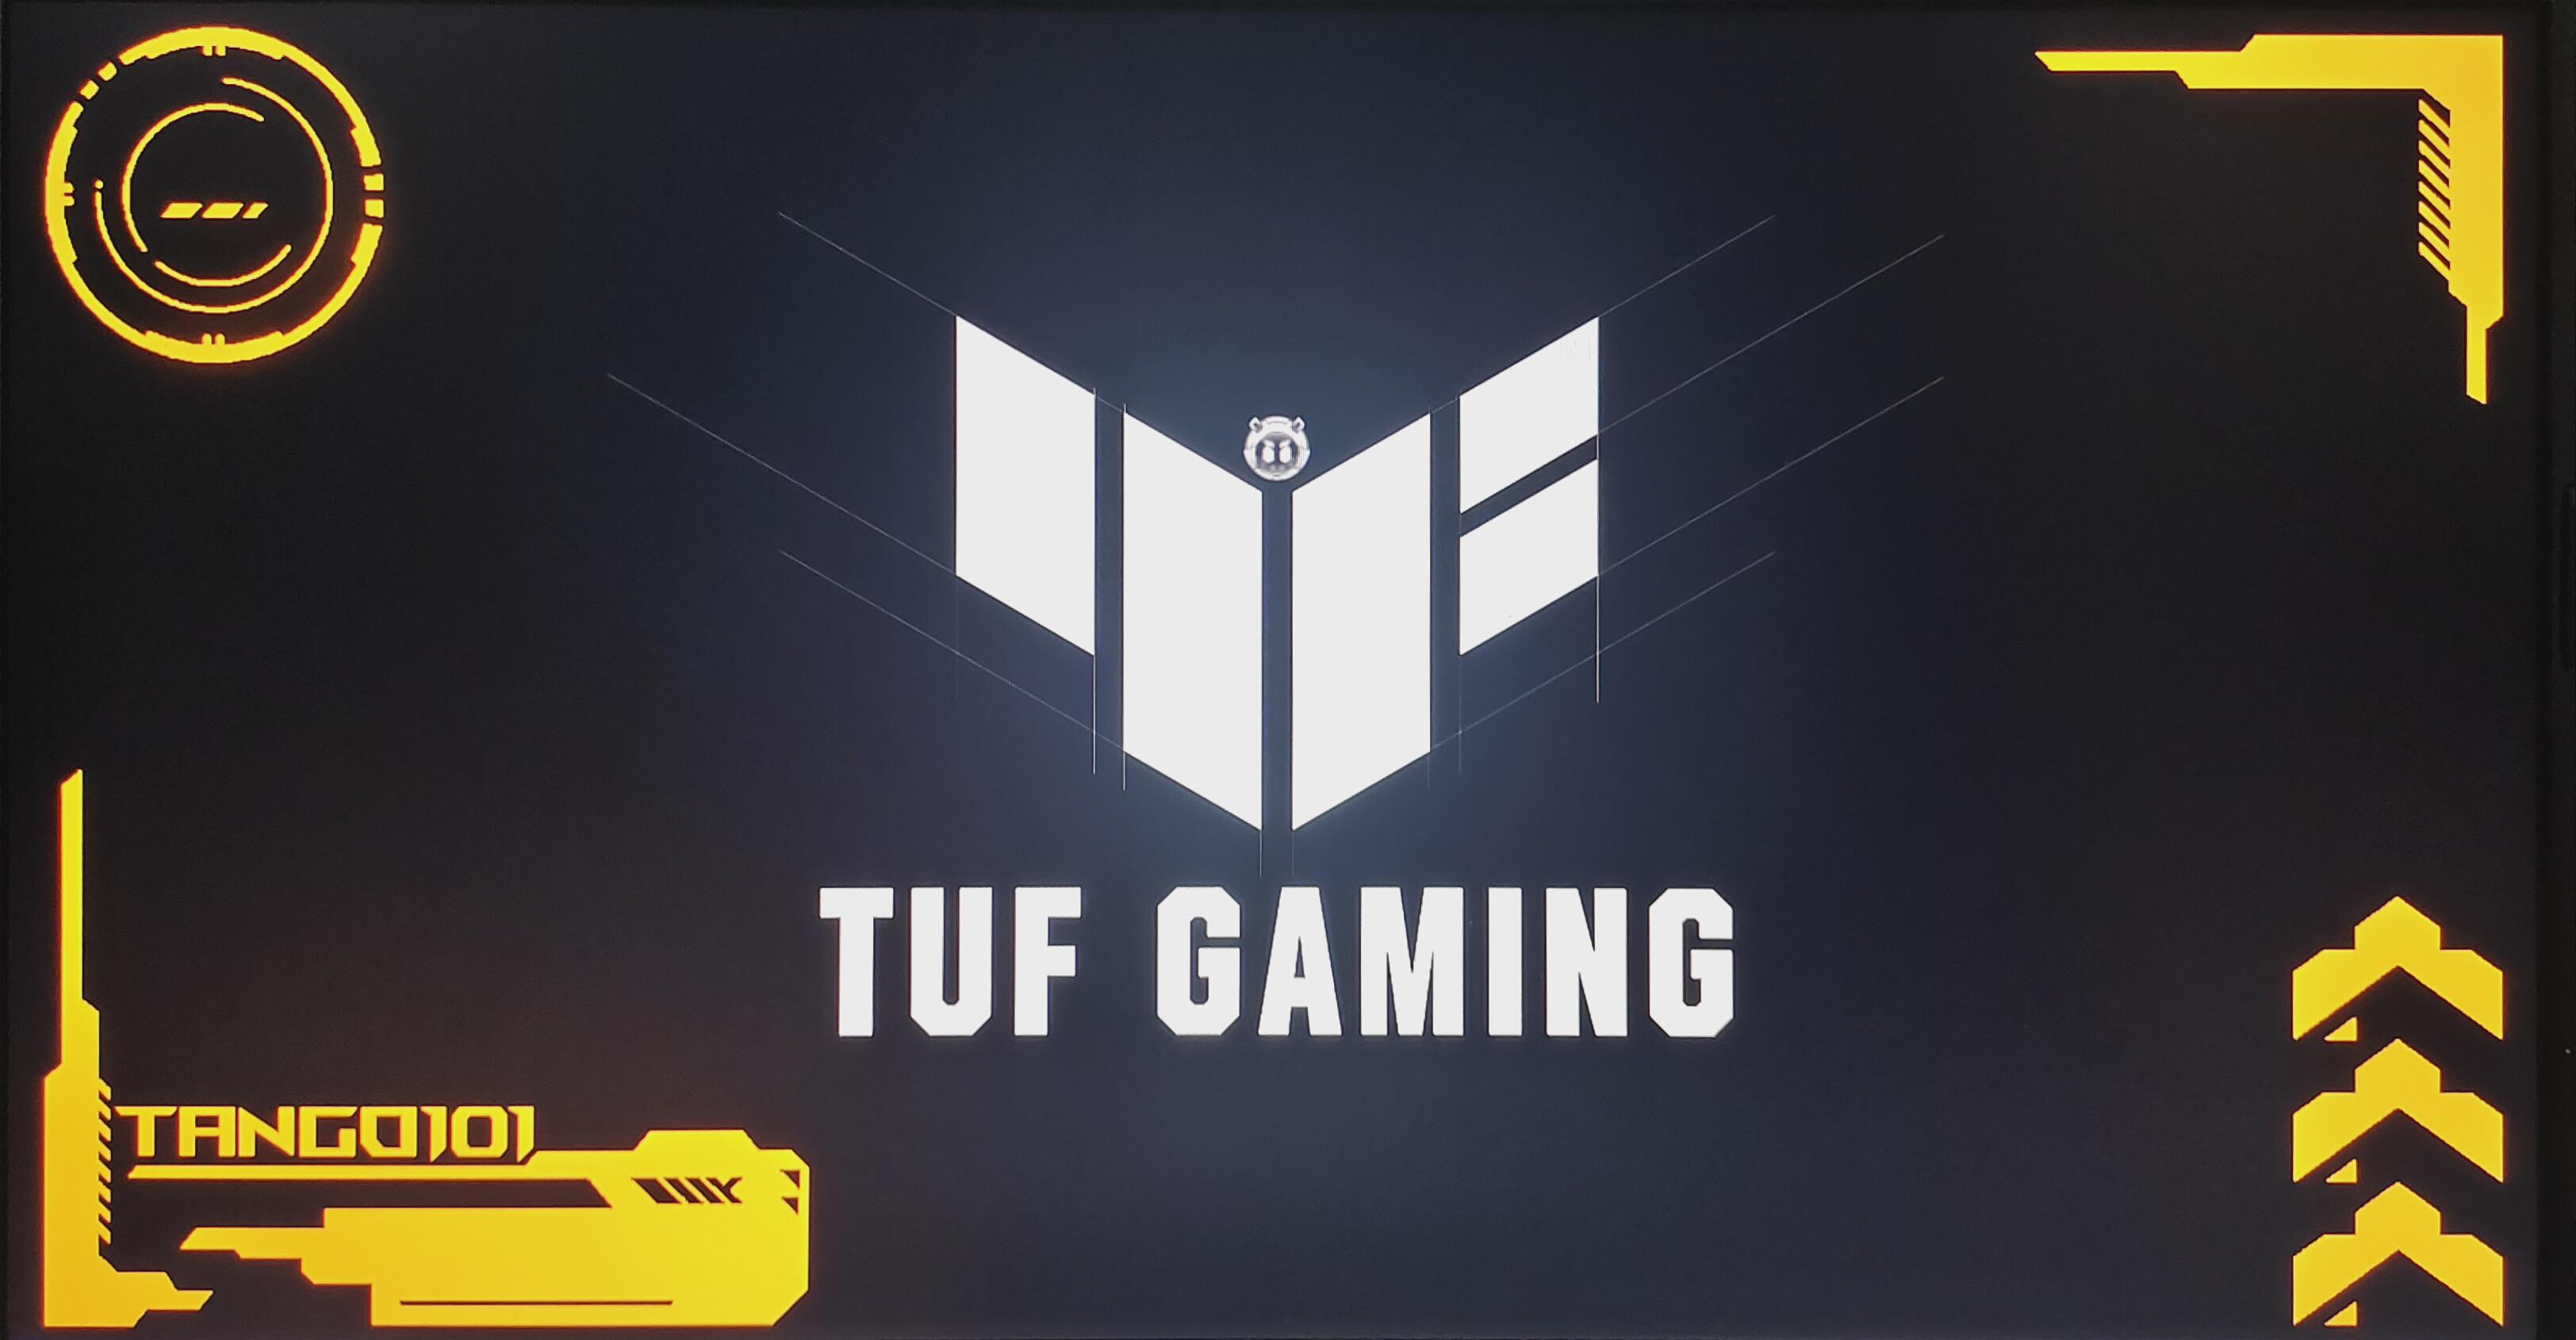 Tuf Gaming Wallpapers 4k, HD Tuf Gaming Backgrounds on WallpaperBat